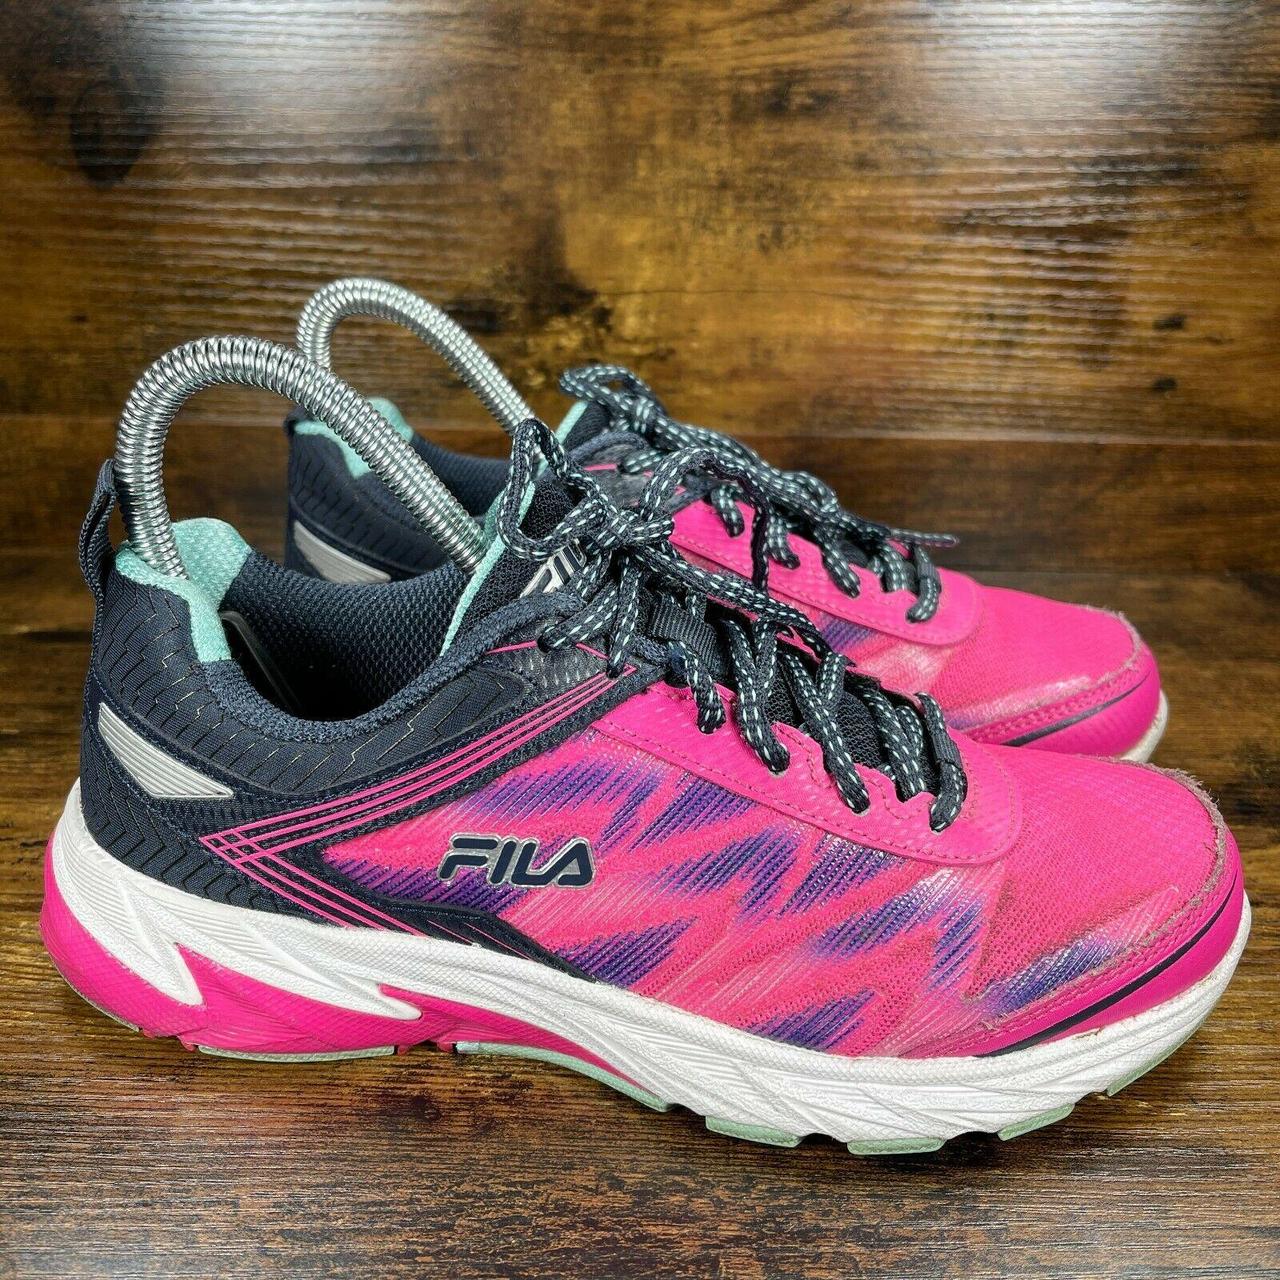 Fila Lazerlite Energized Running Shoe Womens 6.5... - Depop